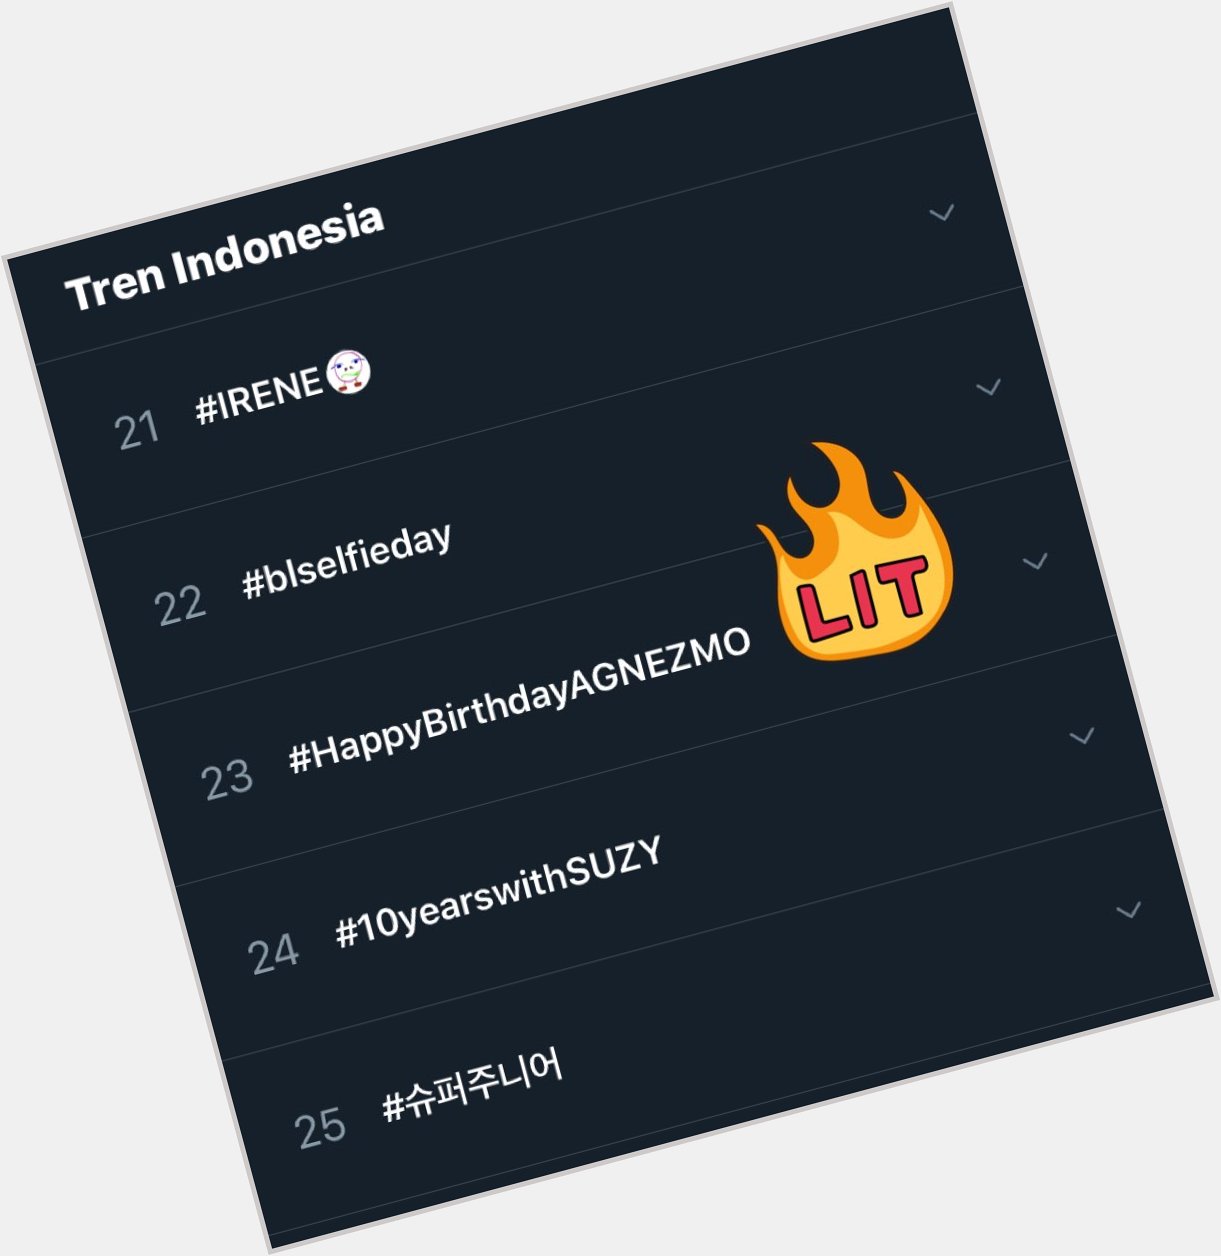 Trending Indonesia 23 up up Happy birthday Agnez mo  